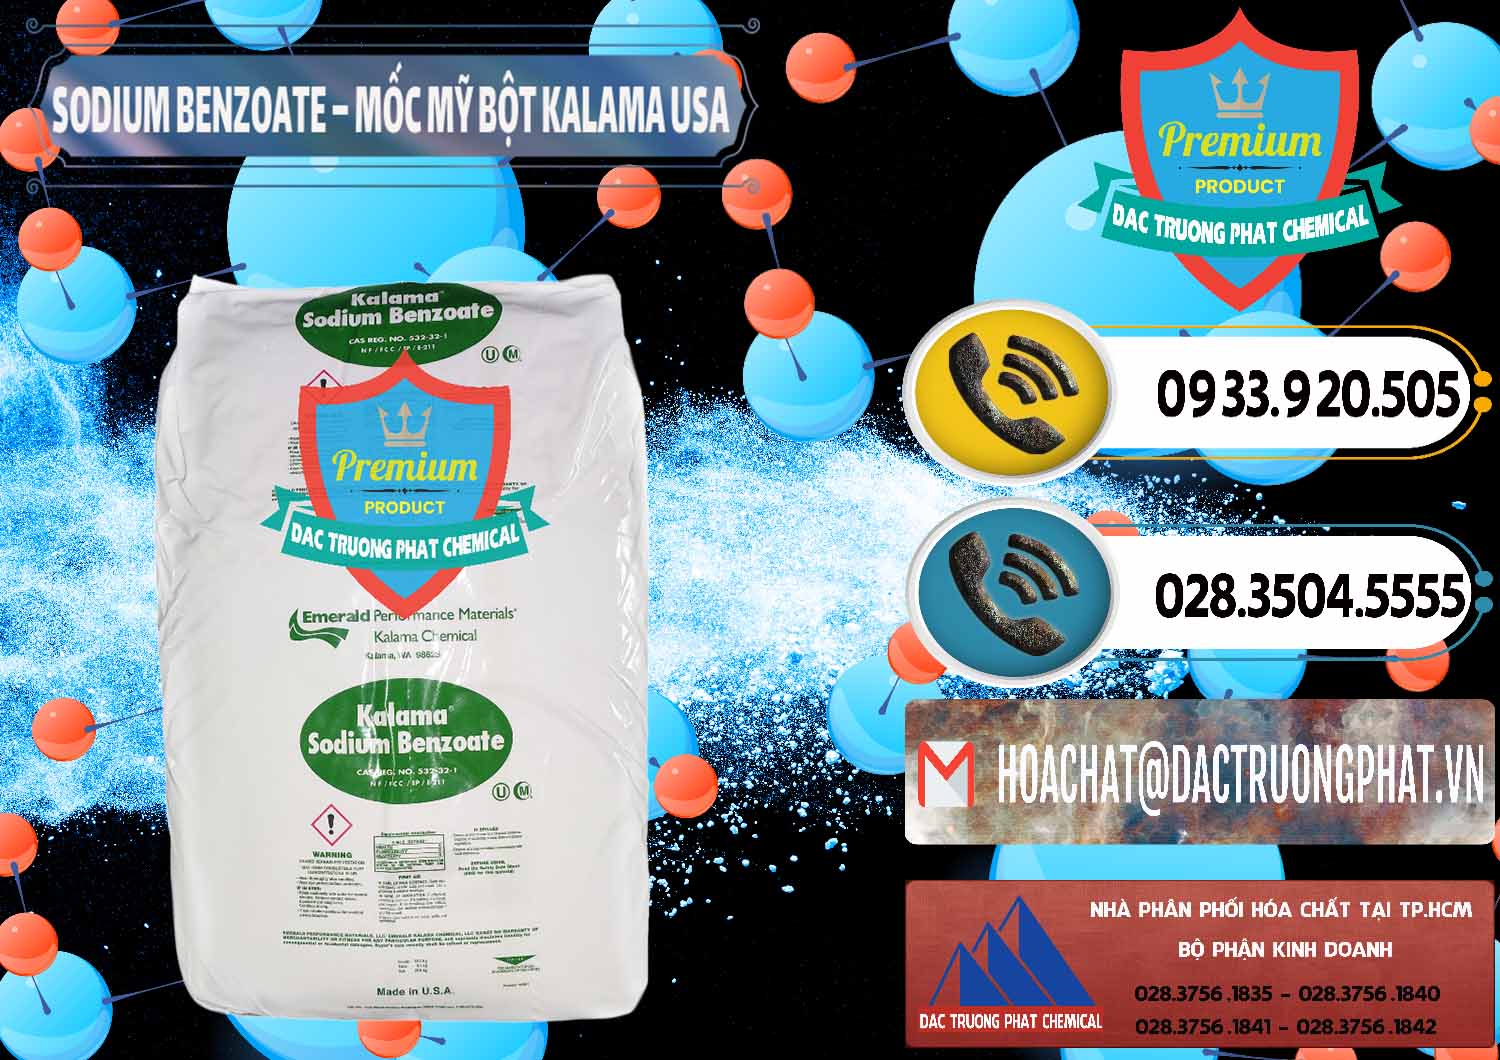 Cung cấp và bán Sodium Benzoate - Mốc Bột Kalama Food Grade Mỹ Usa - 0136 - Công ty chuyên cung ứng và phân phối hóa chất tại TP.HCM - hoachatdetnhuom.vn